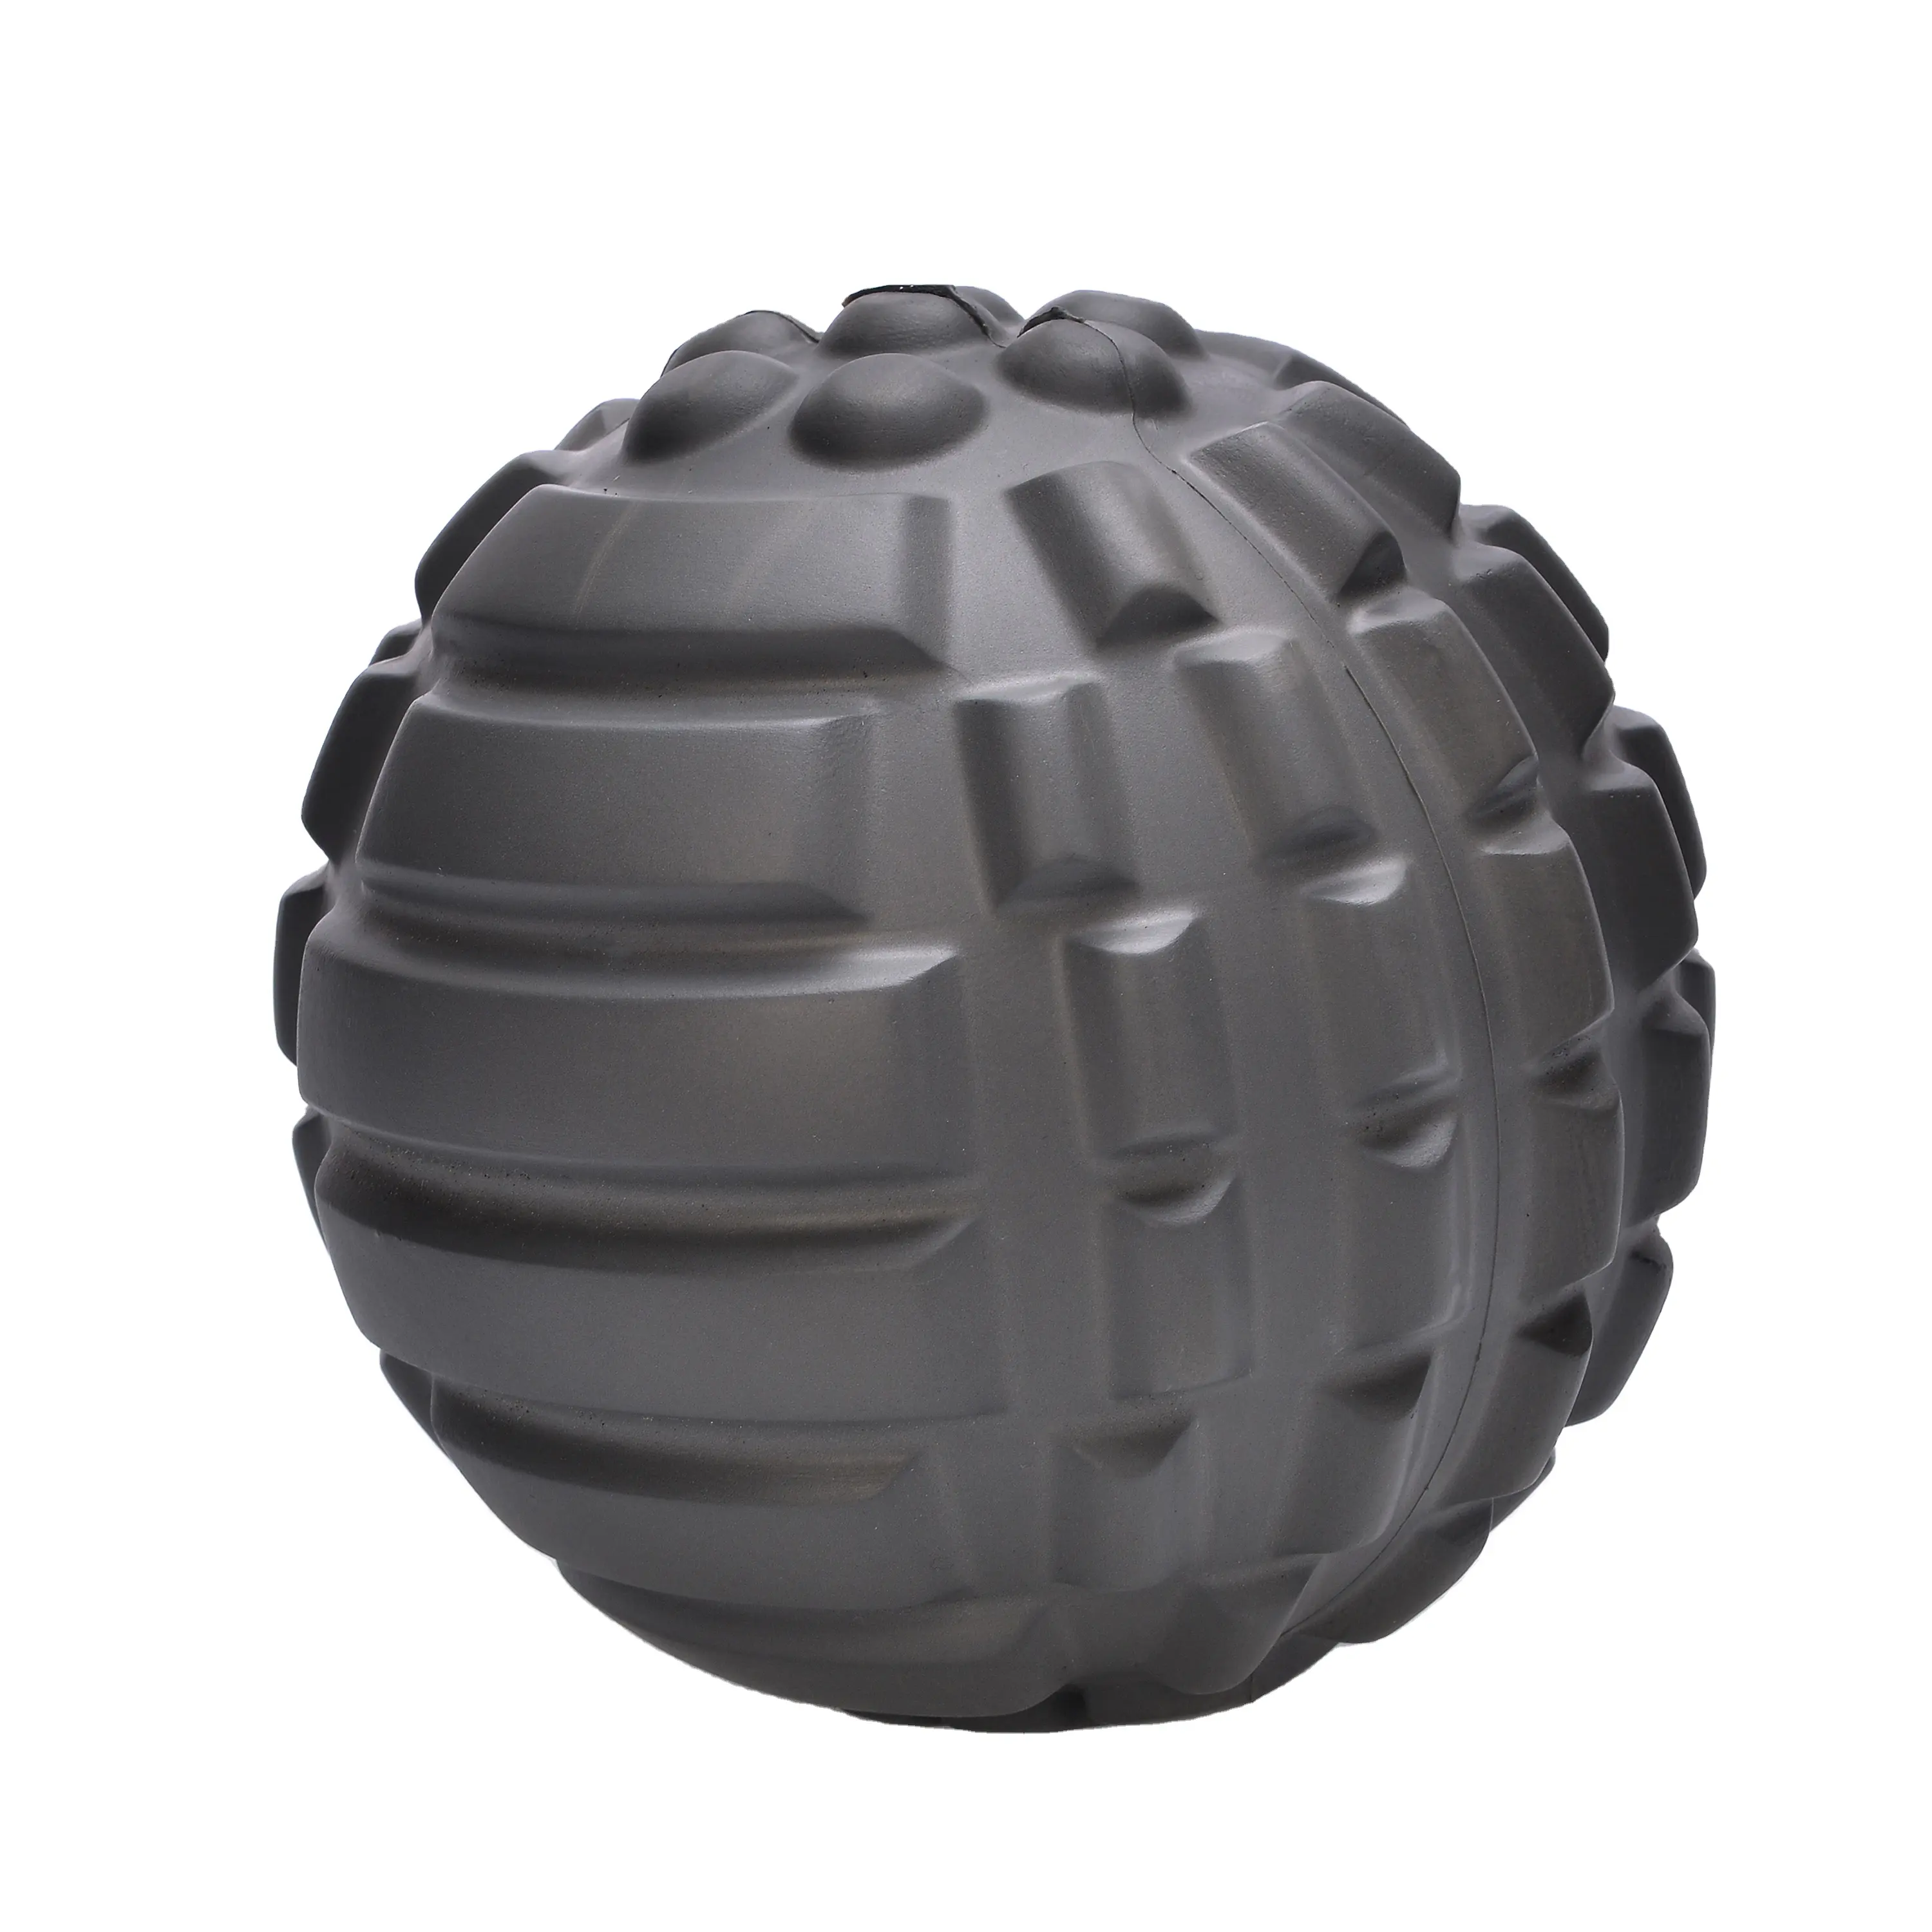 כדורי קצף EVA מותאמים אישית, מוצרי EVA, כדורי קצף חד פעמי של EVA בצפיפות גבוהה, מסופקים למפעל לעיבוד